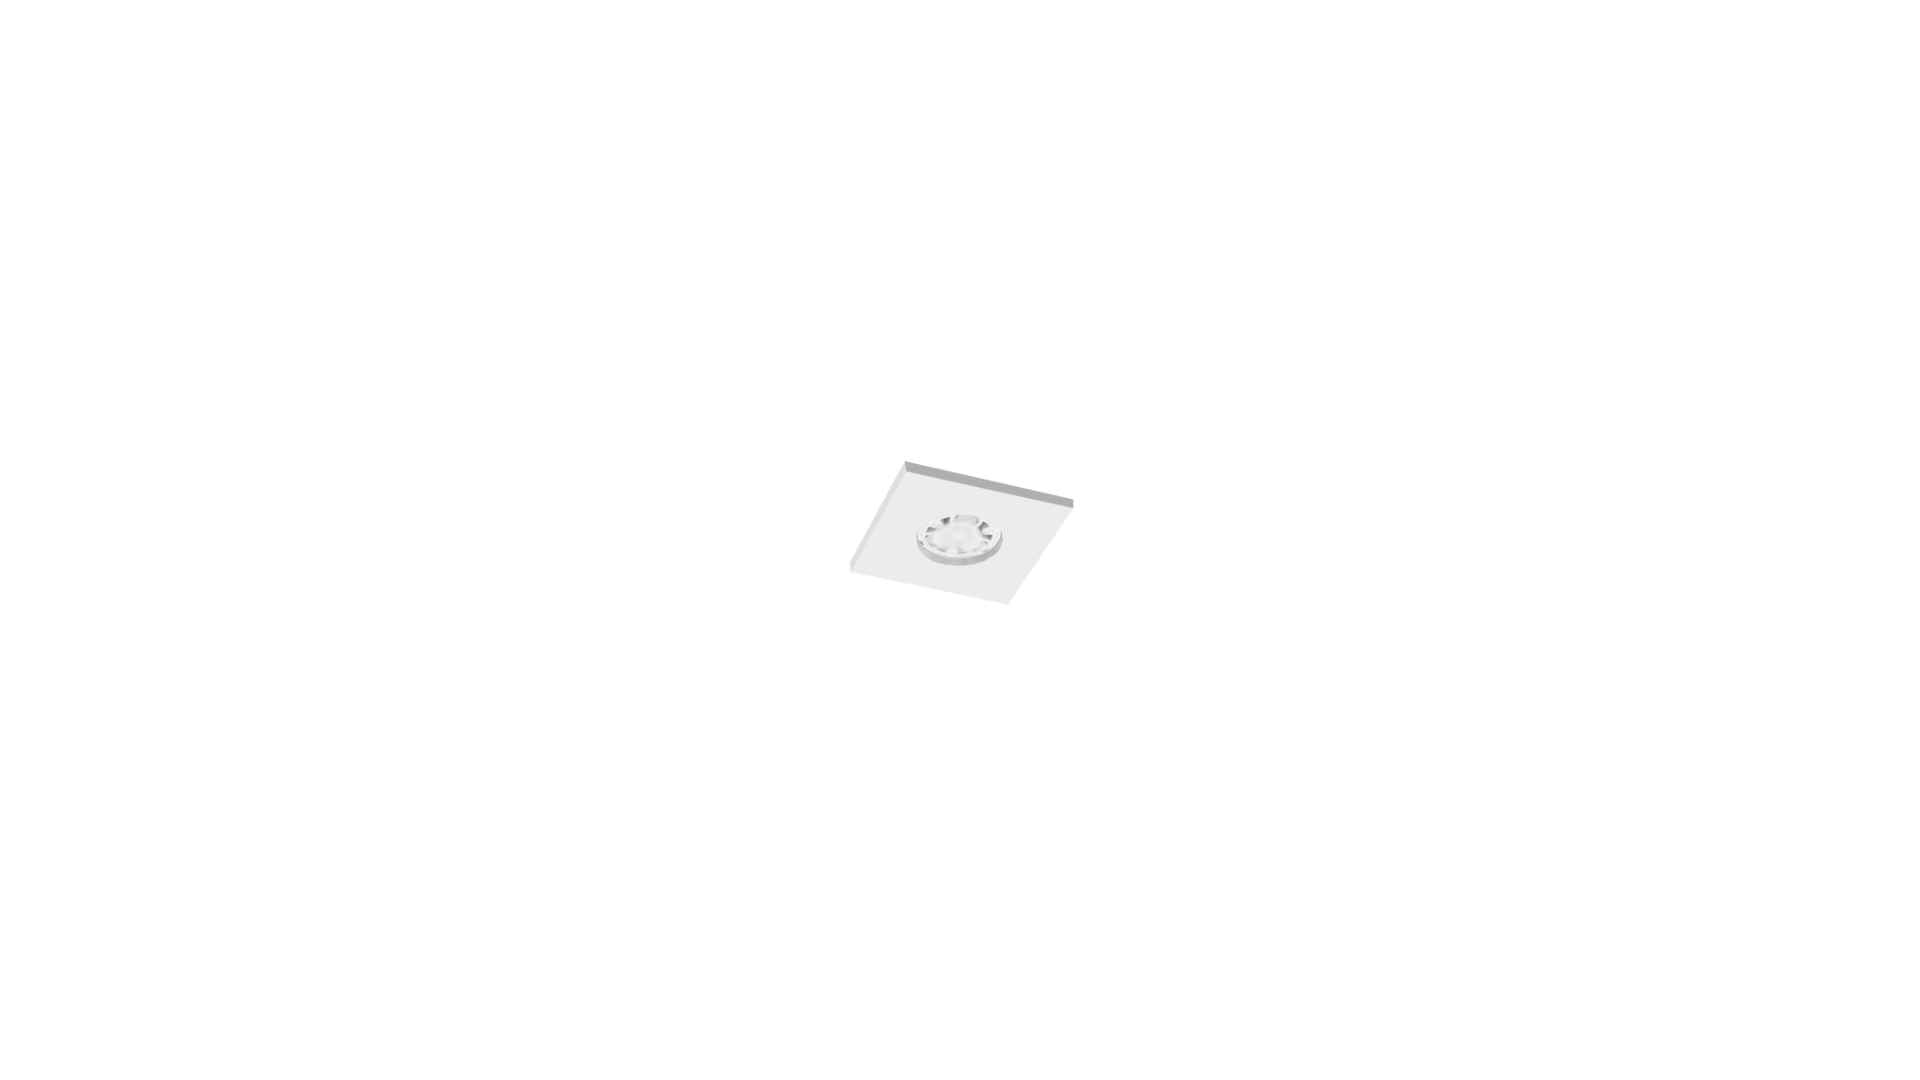 DOWNLIGHT X51_AQ3_Marco Cuadrado no orientable marco Blanco lampara Blanca